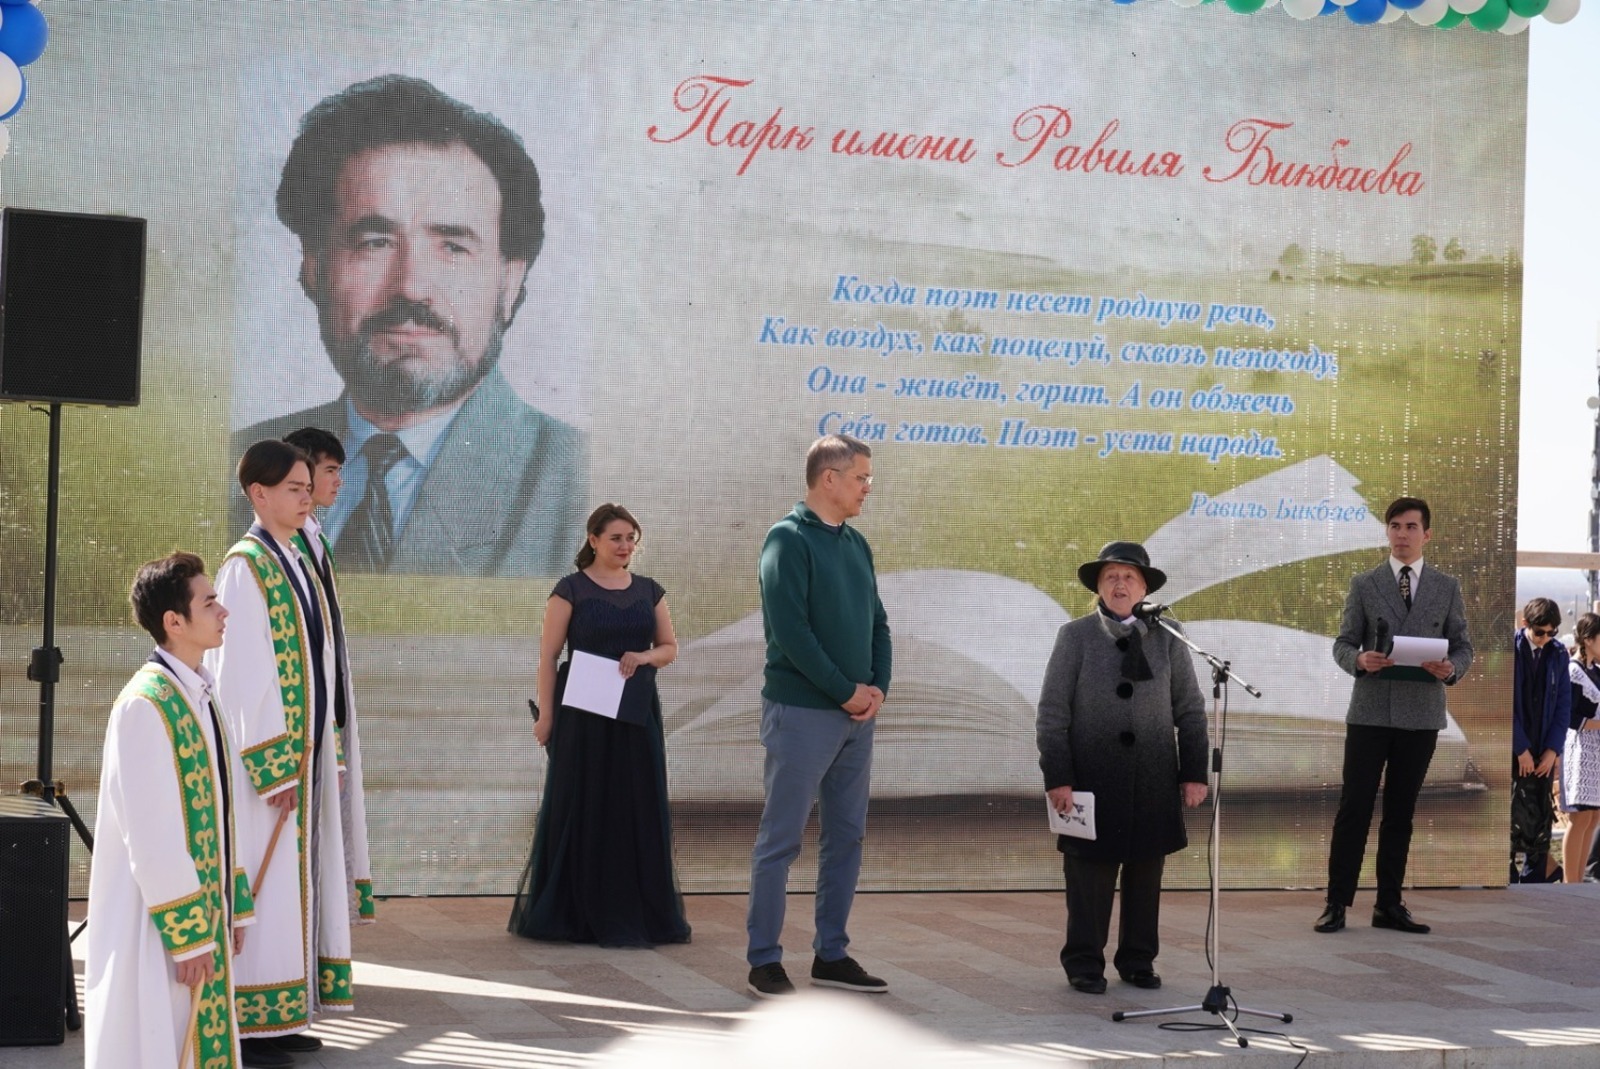 Парк «Южный» имени поэта Равиля Бикбаева появился в столице Башкирии